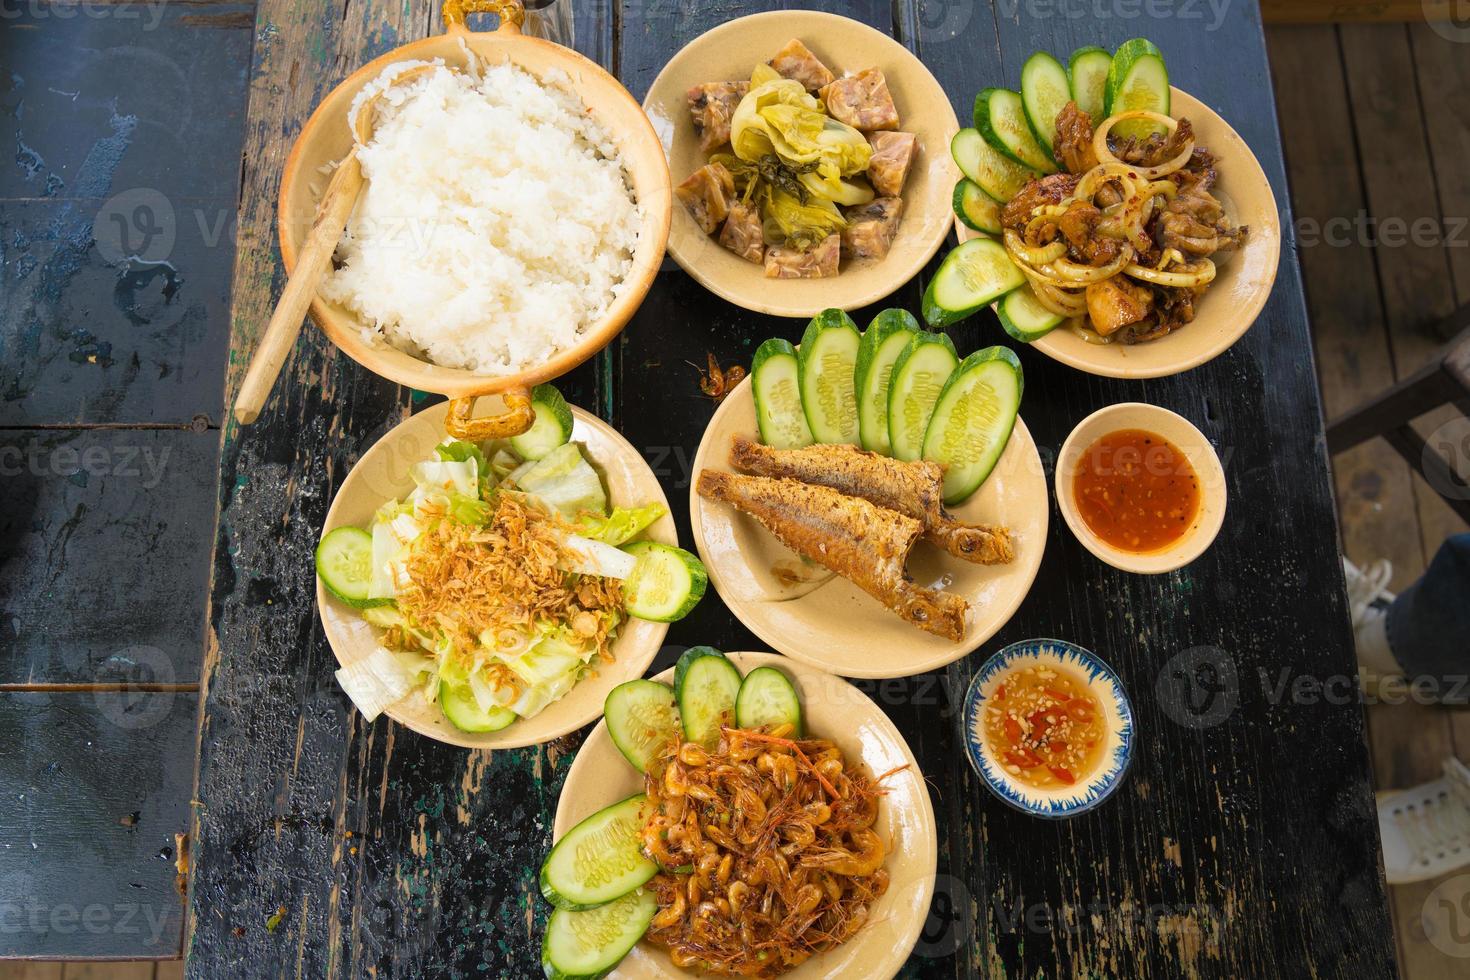 cocina casera de la familia vietnam preparada para cuatro personas arroz cocido, sopa de verduras y pescado frito, cebollas fritas con pollo, rodaja de pepino, comida tradicional vietnamita en el campo. foto